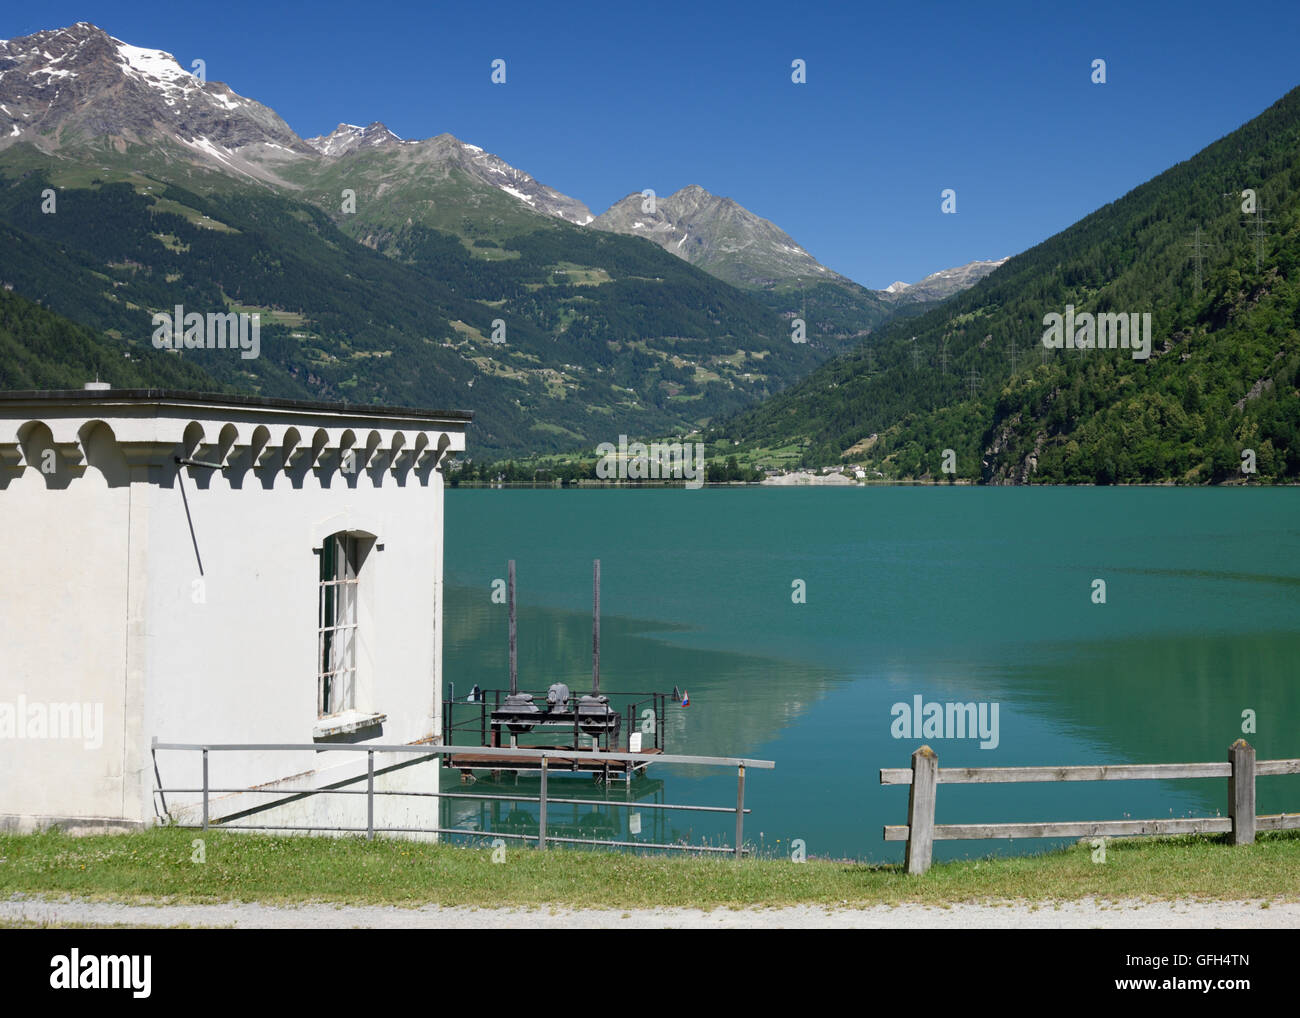 Ein Blick im alpinen Raum der Schweiz mit Dörfern Seen Berge und Pinien. Stockfoto